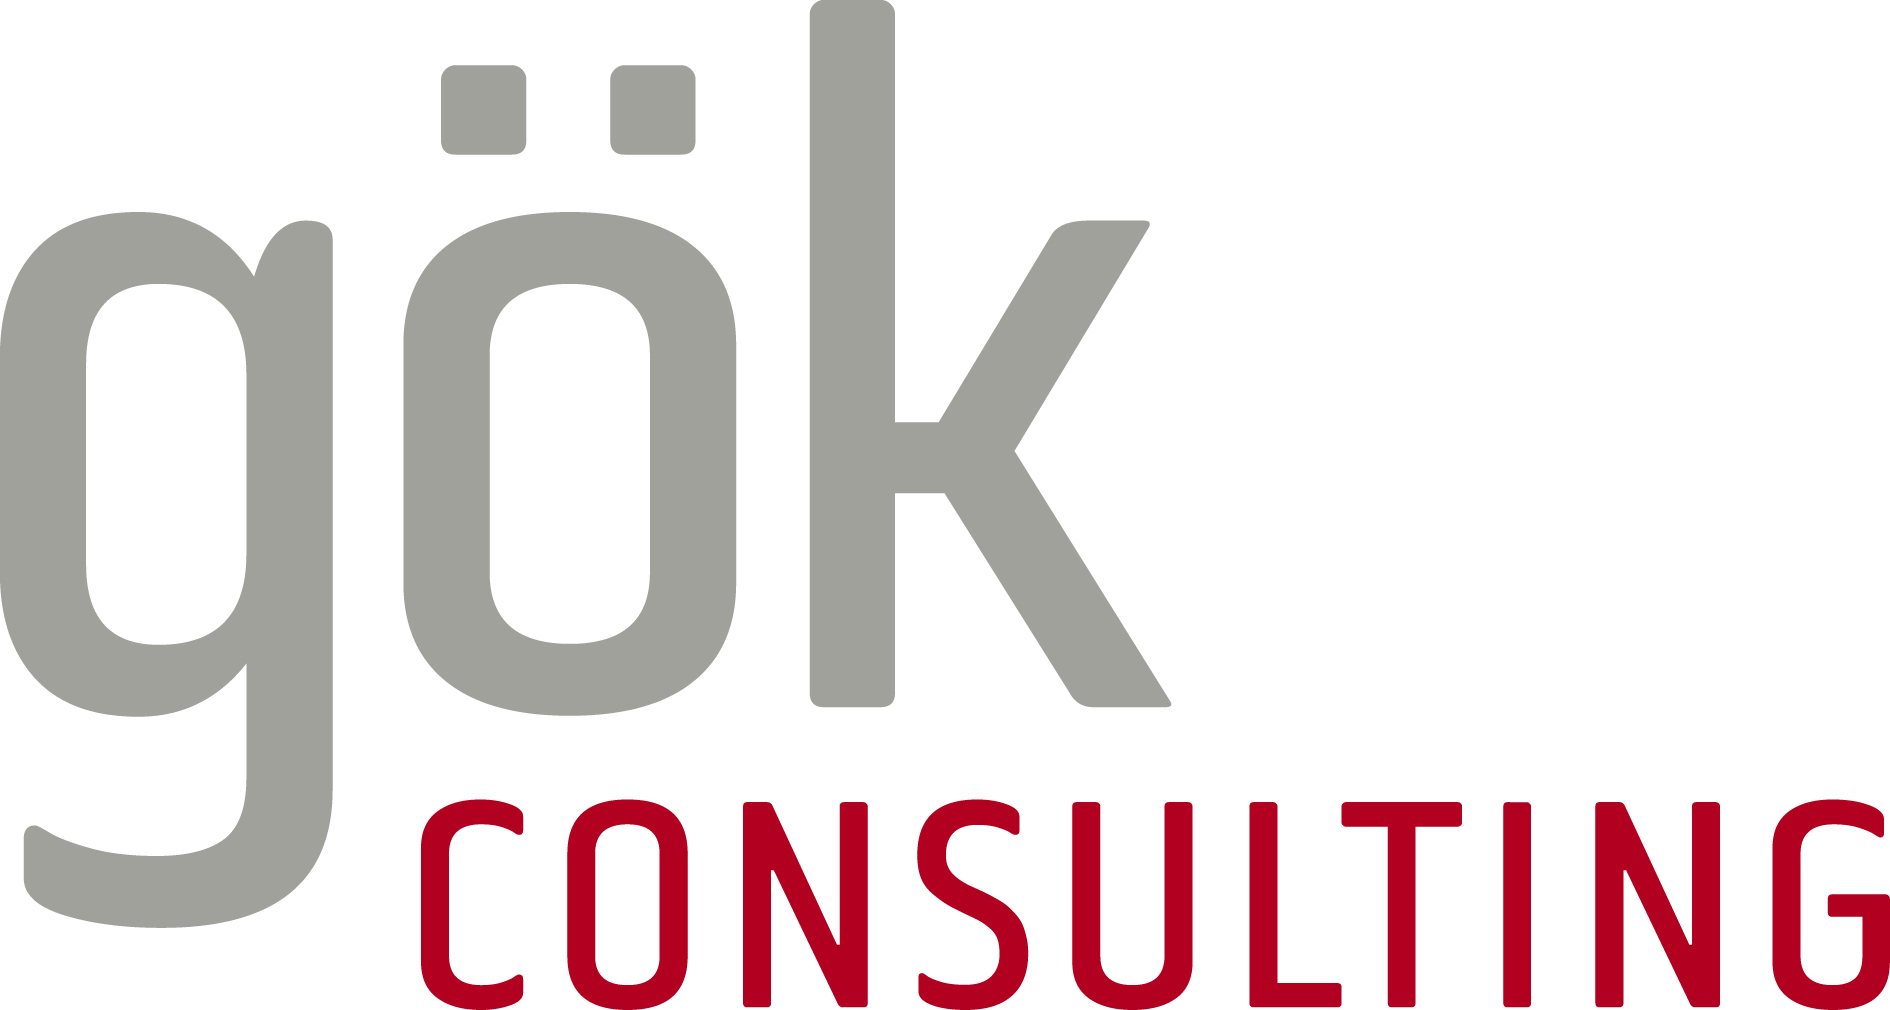 GÖK Consulting Logo